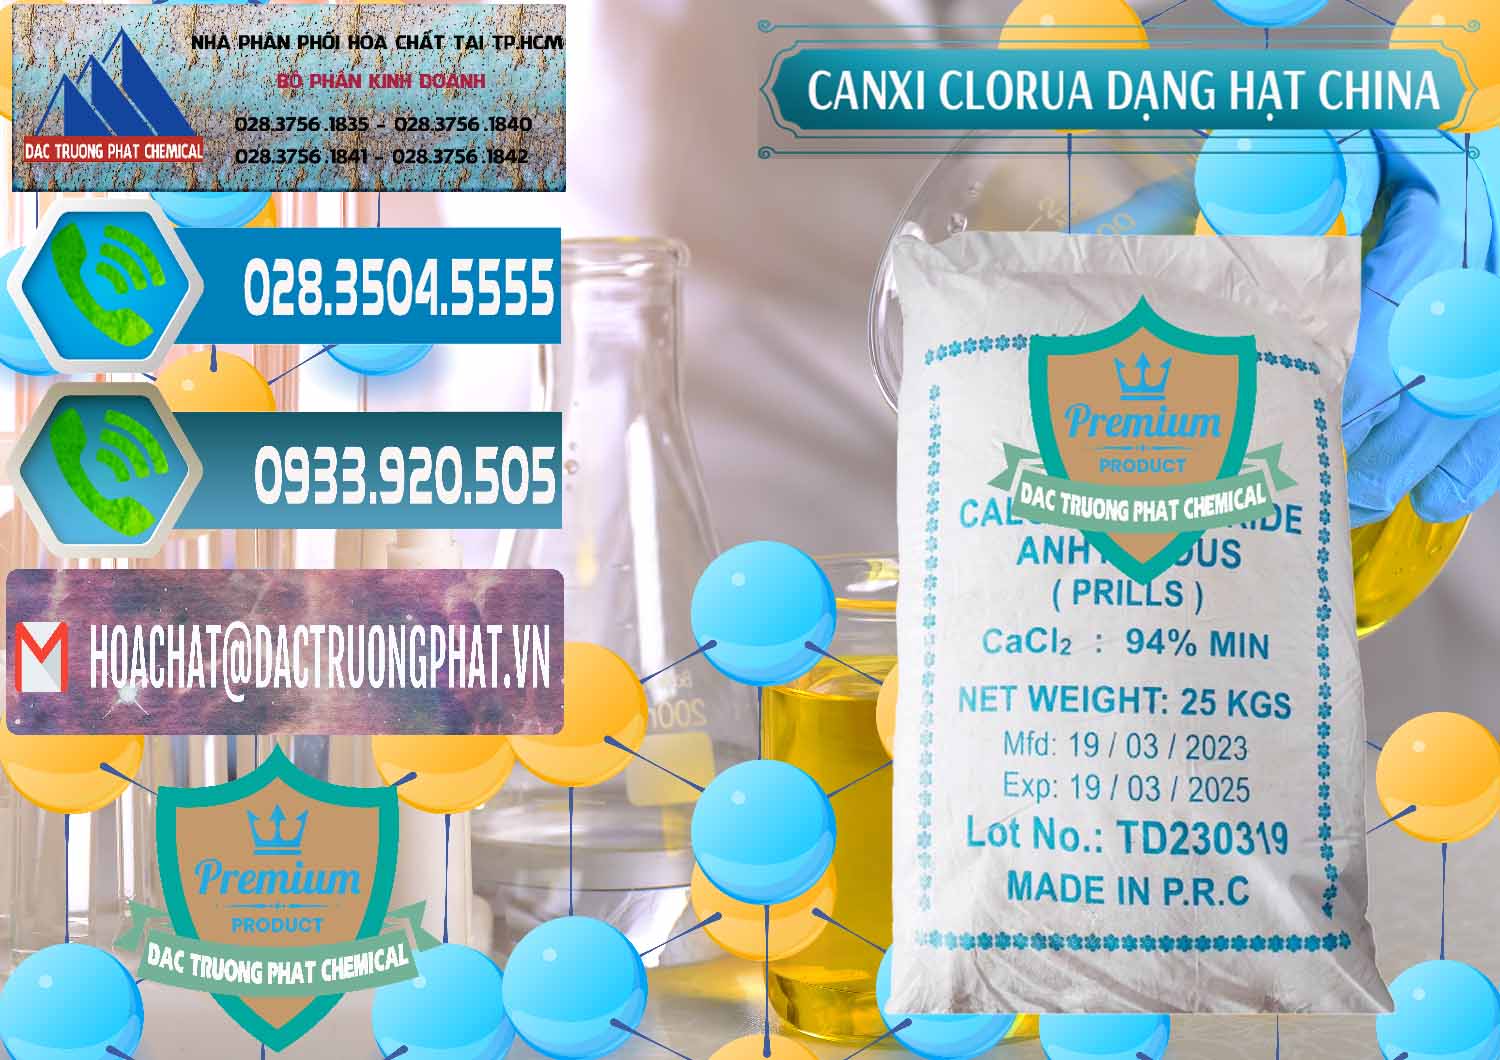 Nơi chuyên bán - cung ứng CaCl2 – Canxi Clorua 94% Dạng Hạt Trung Quốc China - 0373 - Cty chuyên cung ứng _ phân phối hóa chất tại TP.HCM - congtyhoachat.net